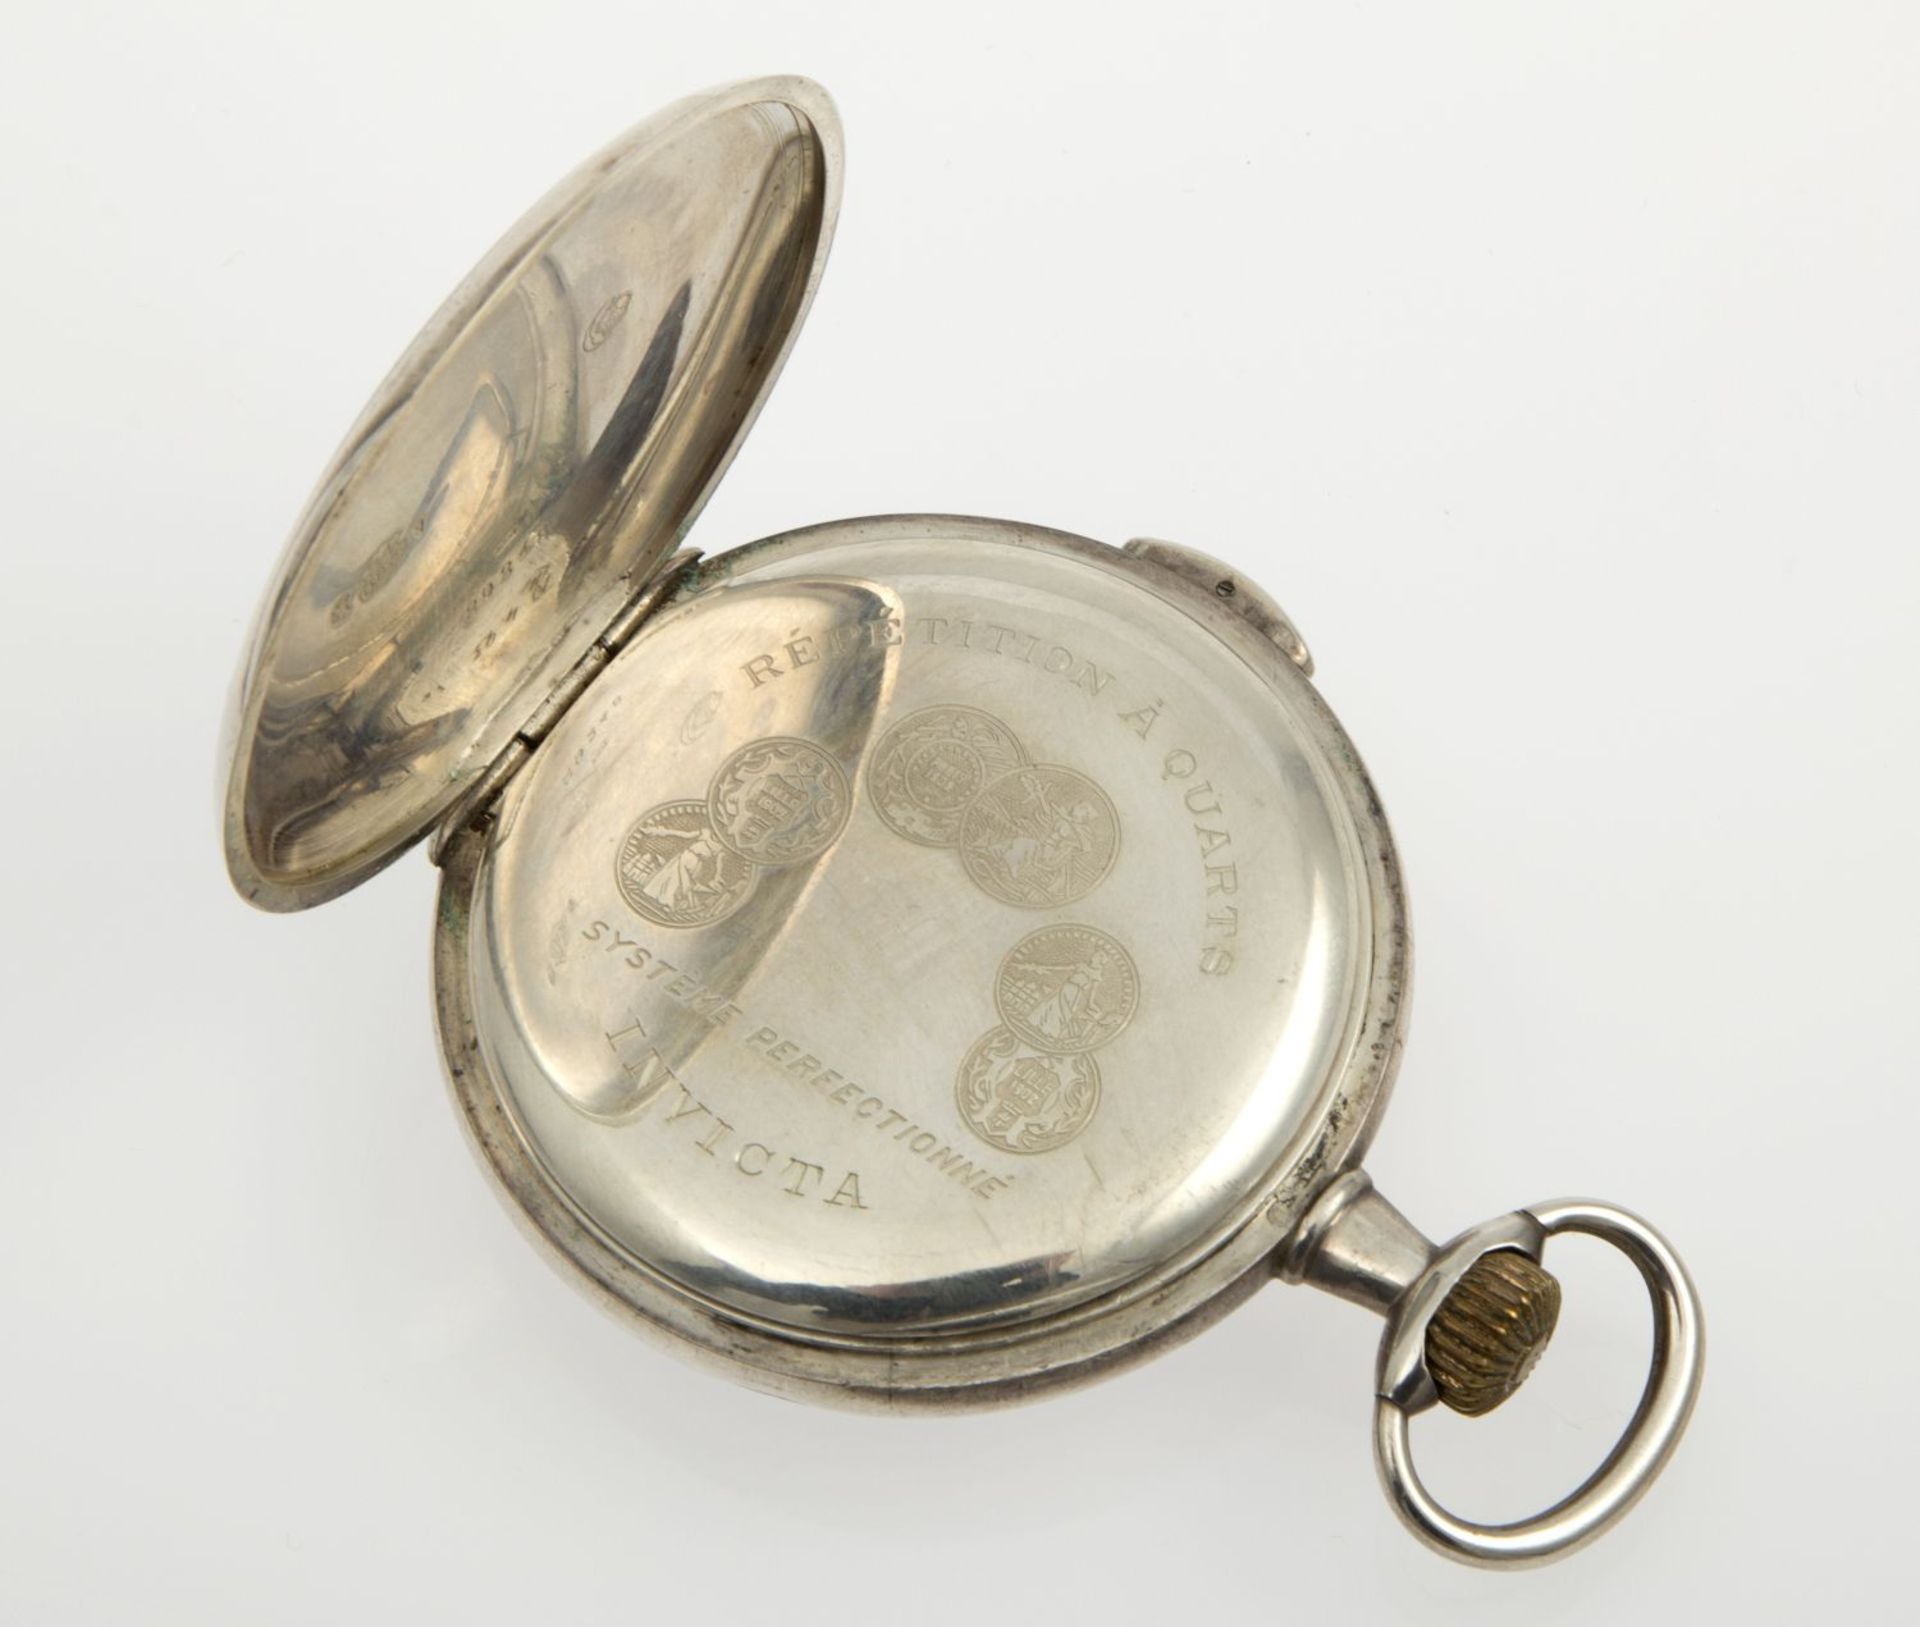 Invicta-Taschenuhr mit ViertelrepetitionGehäuse und Cuvette aus Silber 875. Emailzifferblatt mit - Bild 3 aus 3